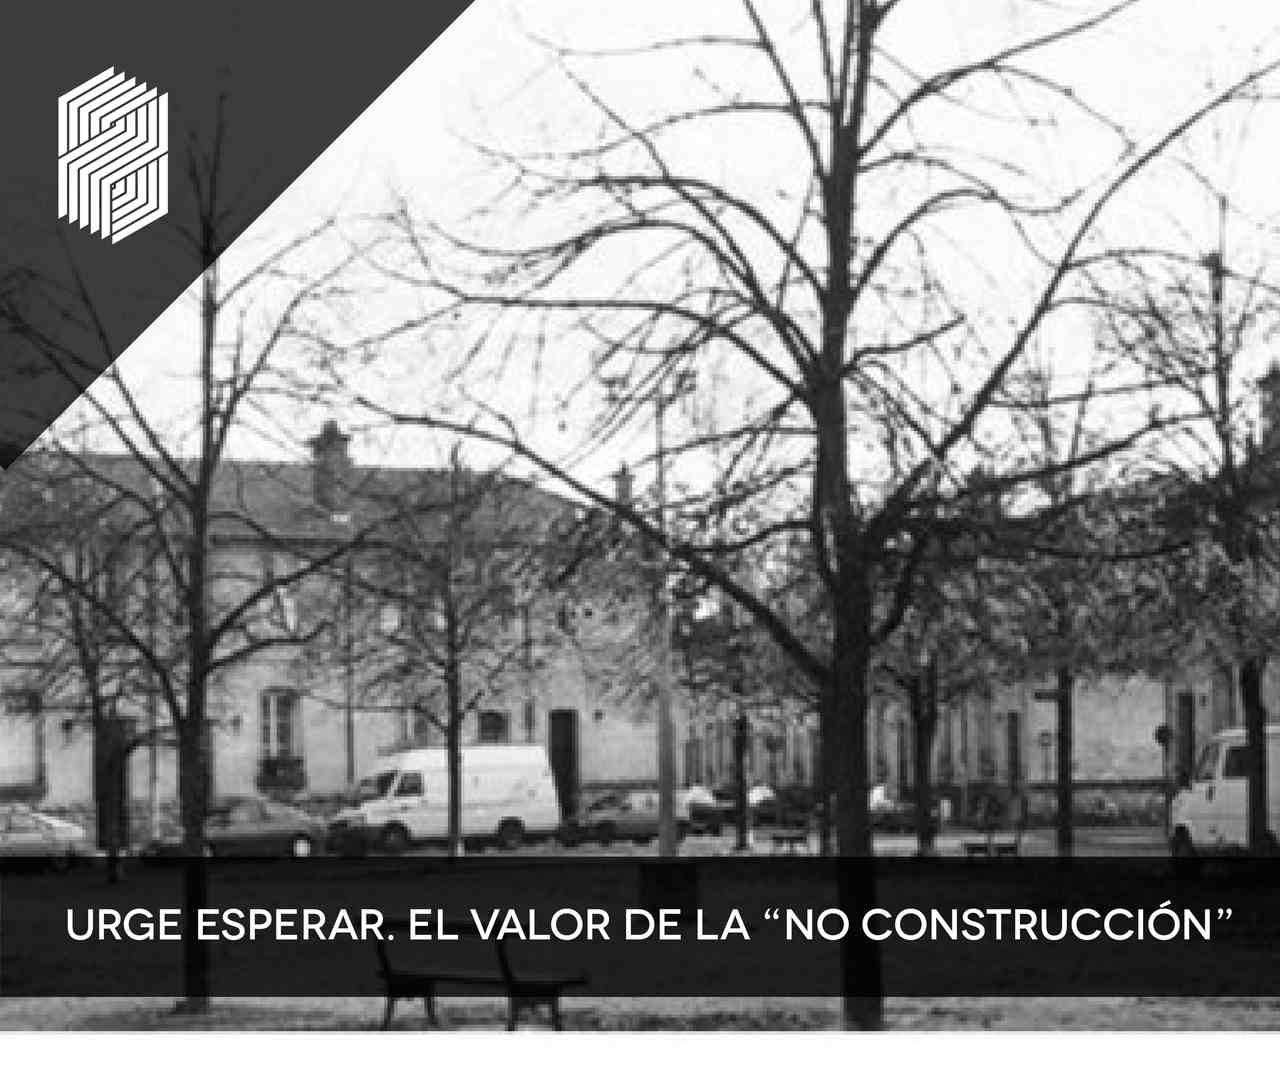 URGE ESPERAR. EL VALOR DE LA “NO CONSTRUCCIÓN”